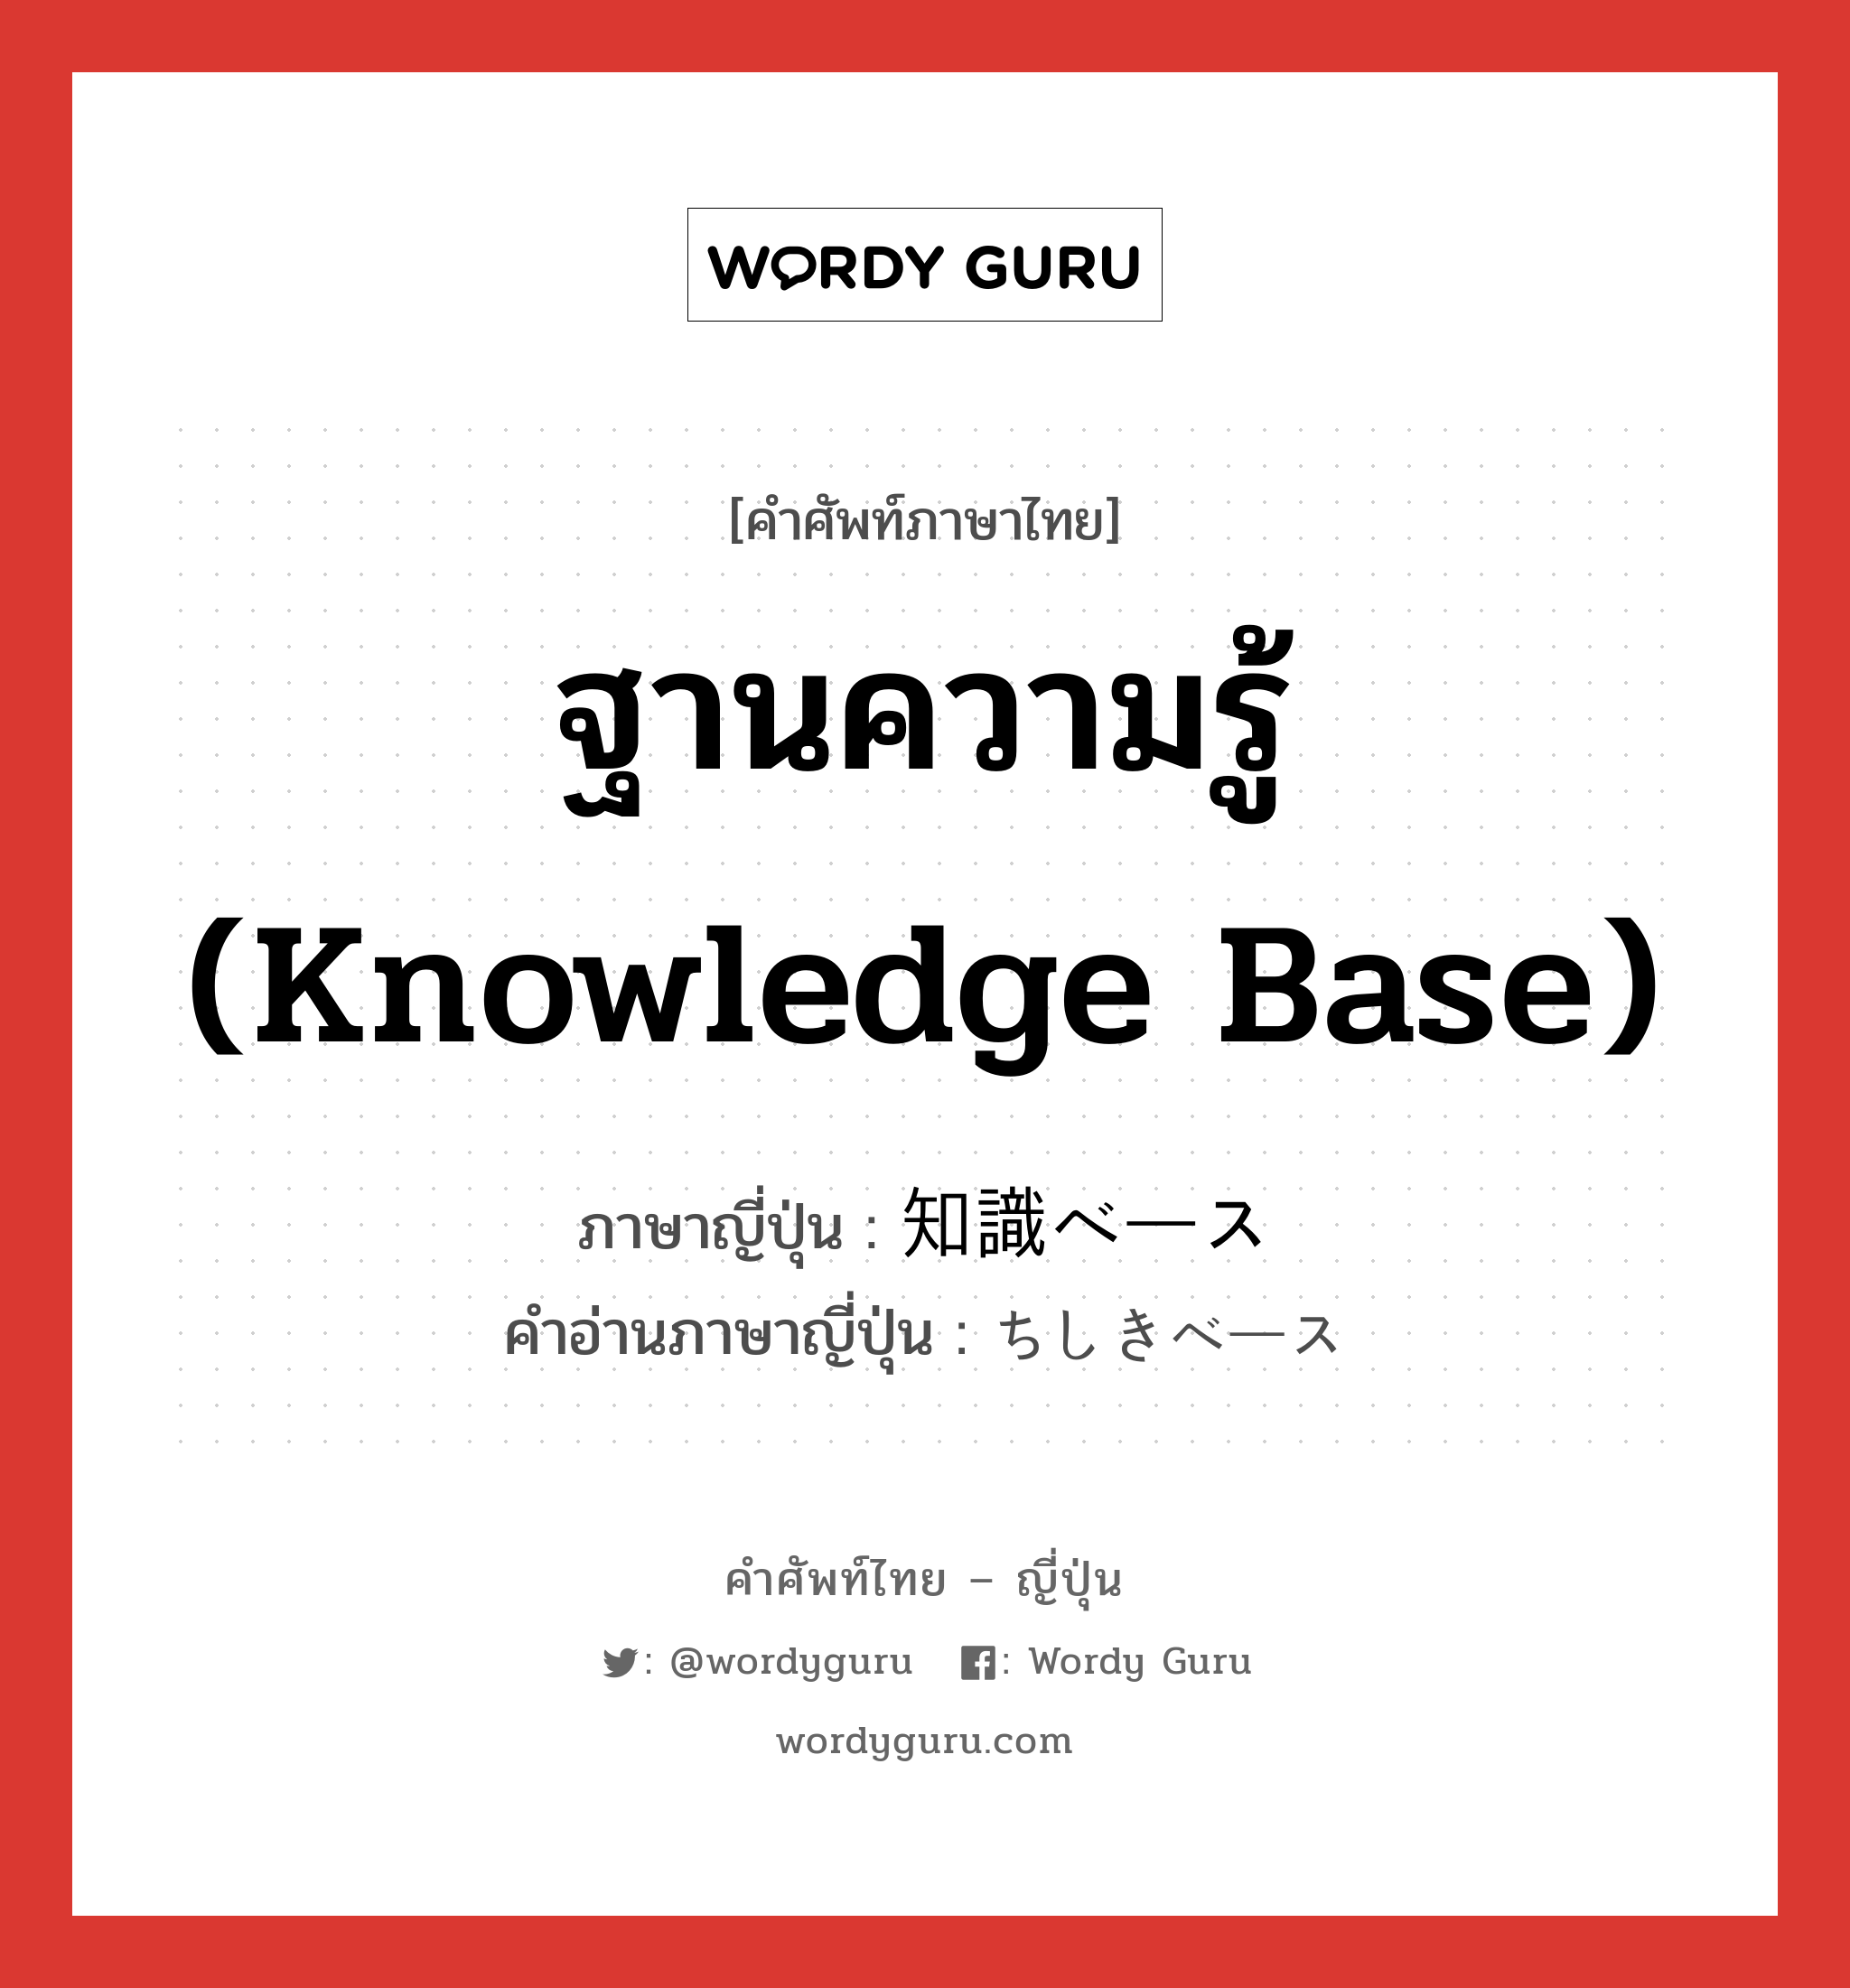 ฐานความรู้ (Knowledge base) ภาษาญี่ปุ่นคืออะไร, คำศัพท์ภาษาไทย - ญี่ปุ่น ฐานความรู้ (Knowledge base) ภาษาญี่ปุ่น 知識ベース คำอ่านภาษาญี่ปุ่น ちしきベース หมวด n หมวด n